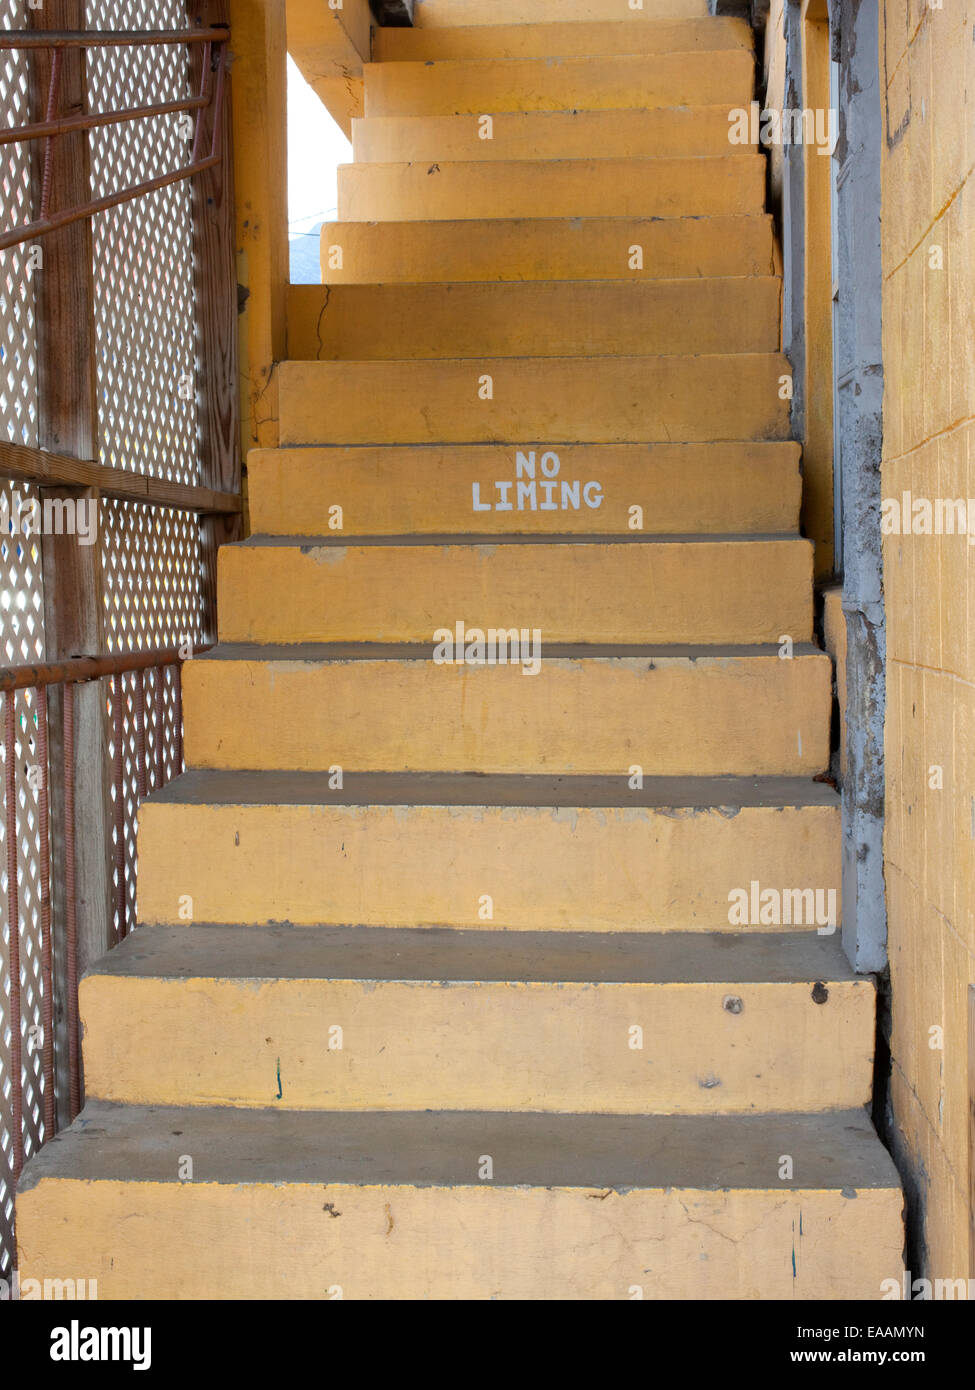 Escaleras con 'no liming' firmar Foto de stock